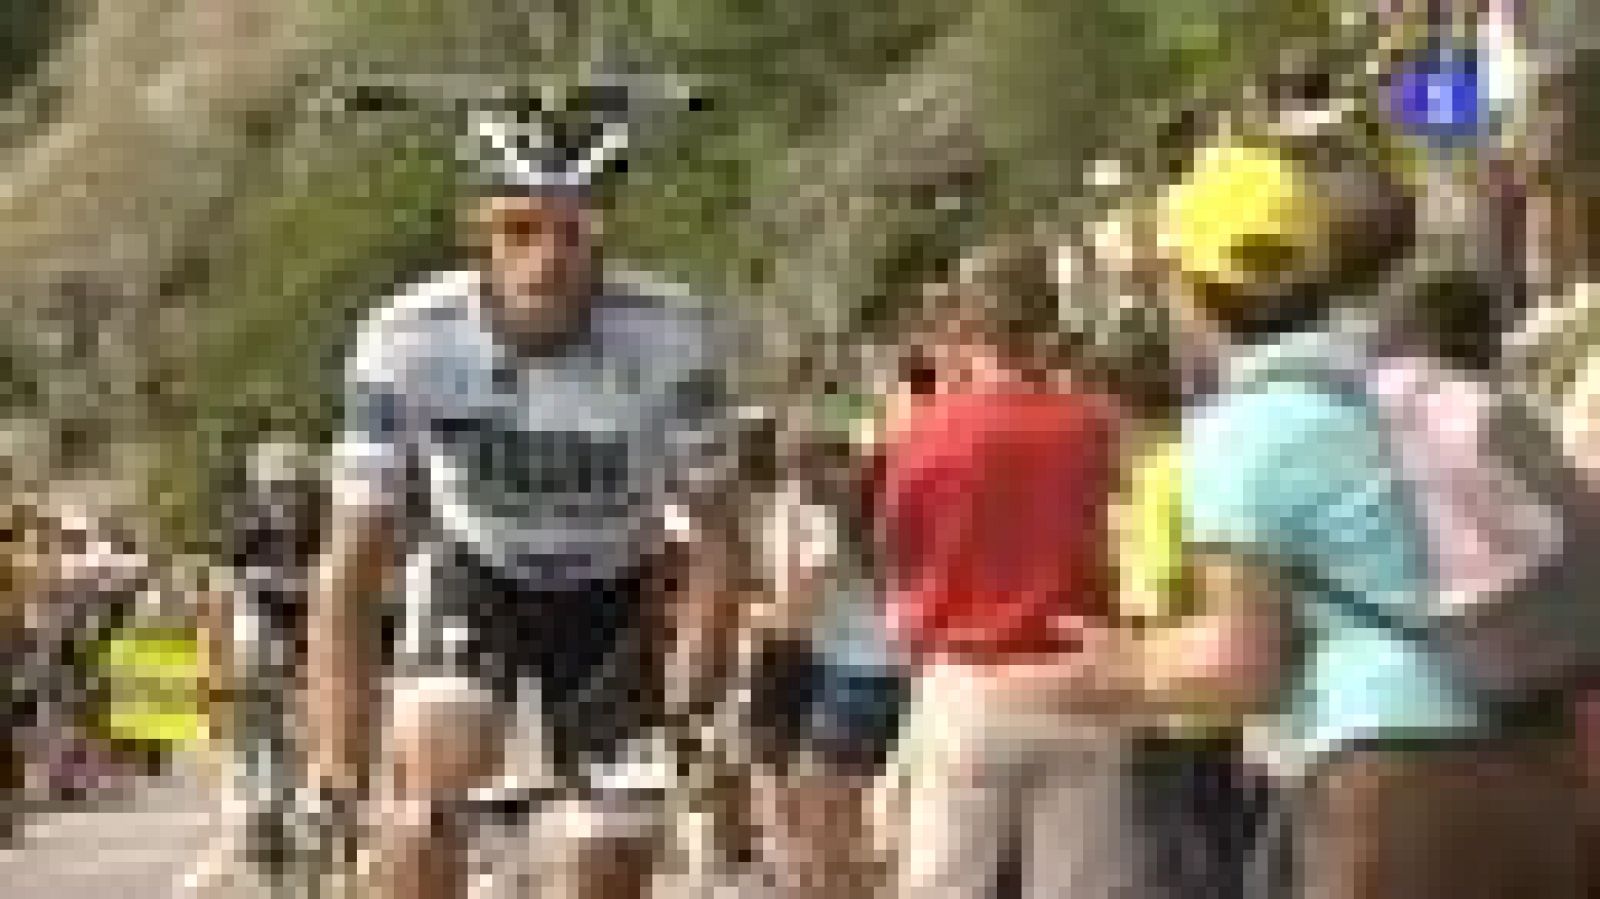 Vuelve a ver la subida completa a Alpe d'Huez de la 19ª etapa del Tour de Francia 2011, en la que Contador fue el protagonista con sus ataques.